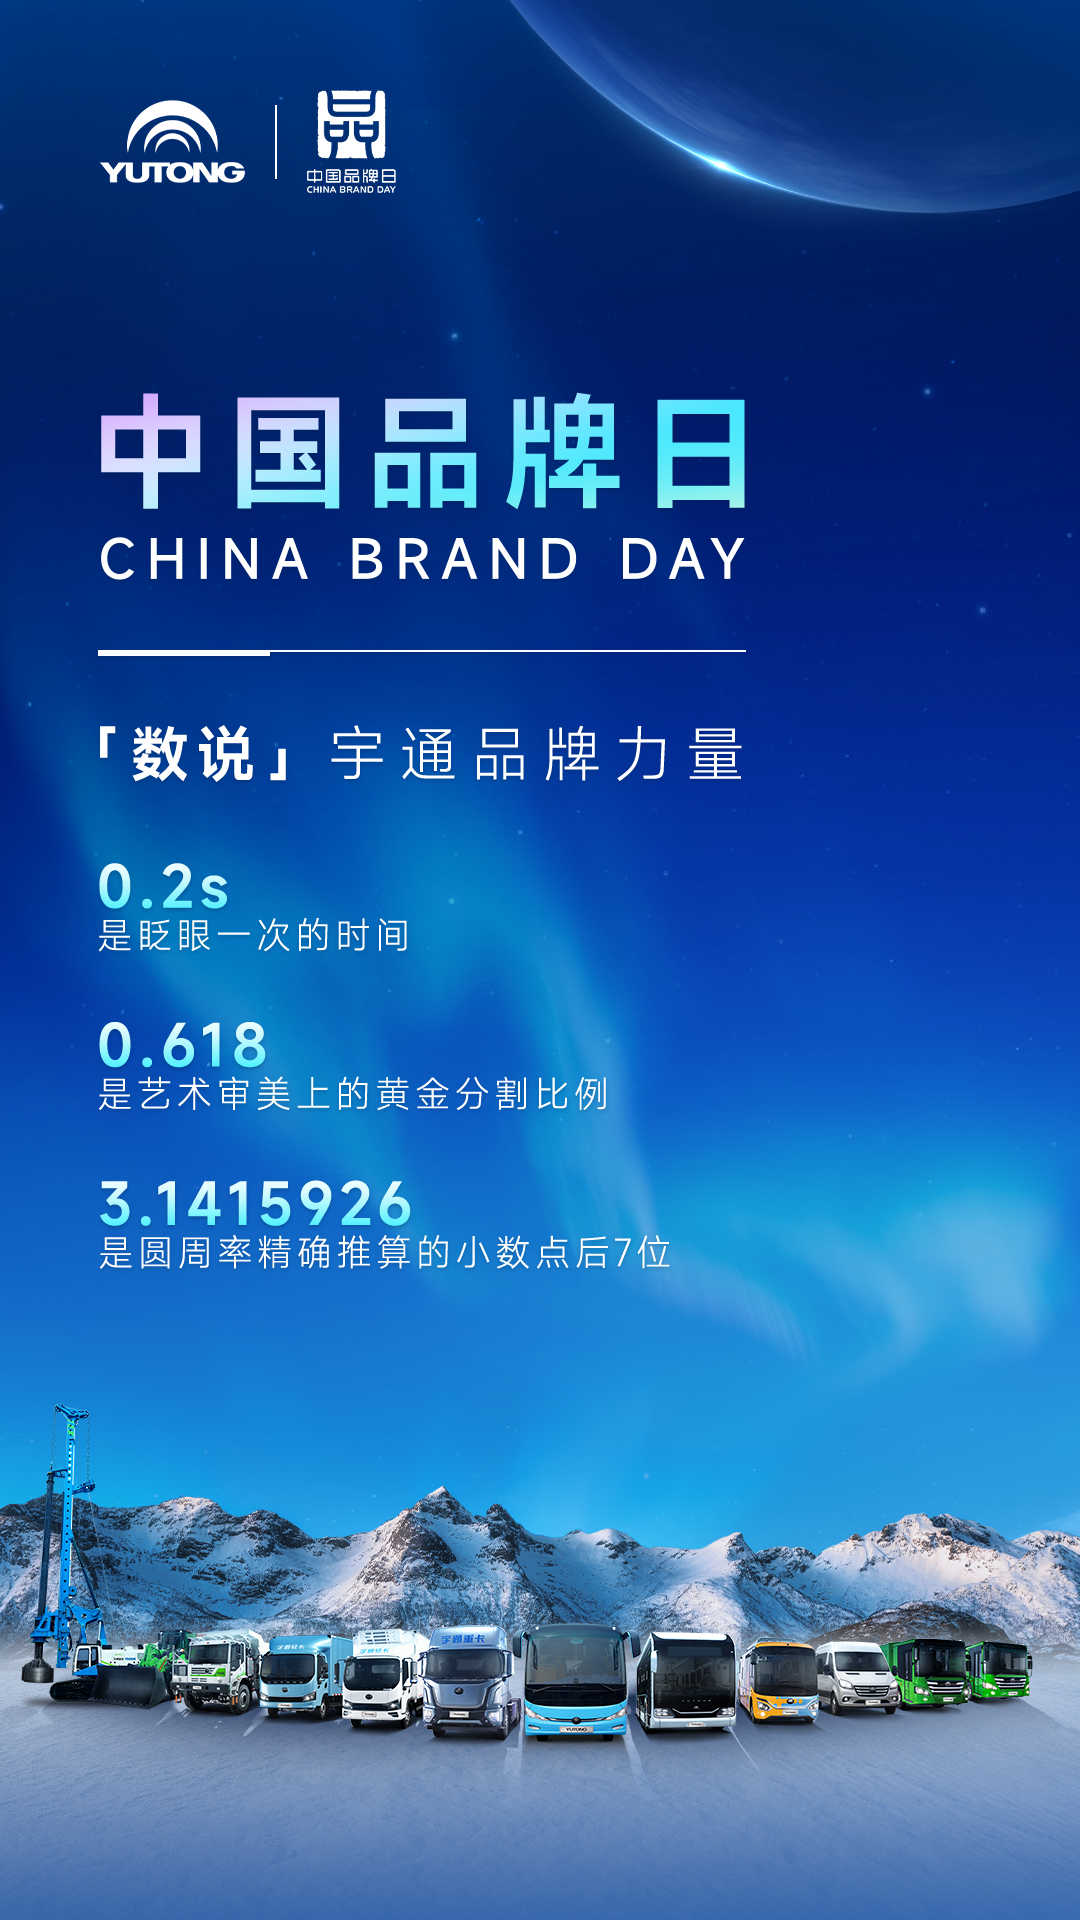 中国品牌日 | “数”说宇通品牌力量